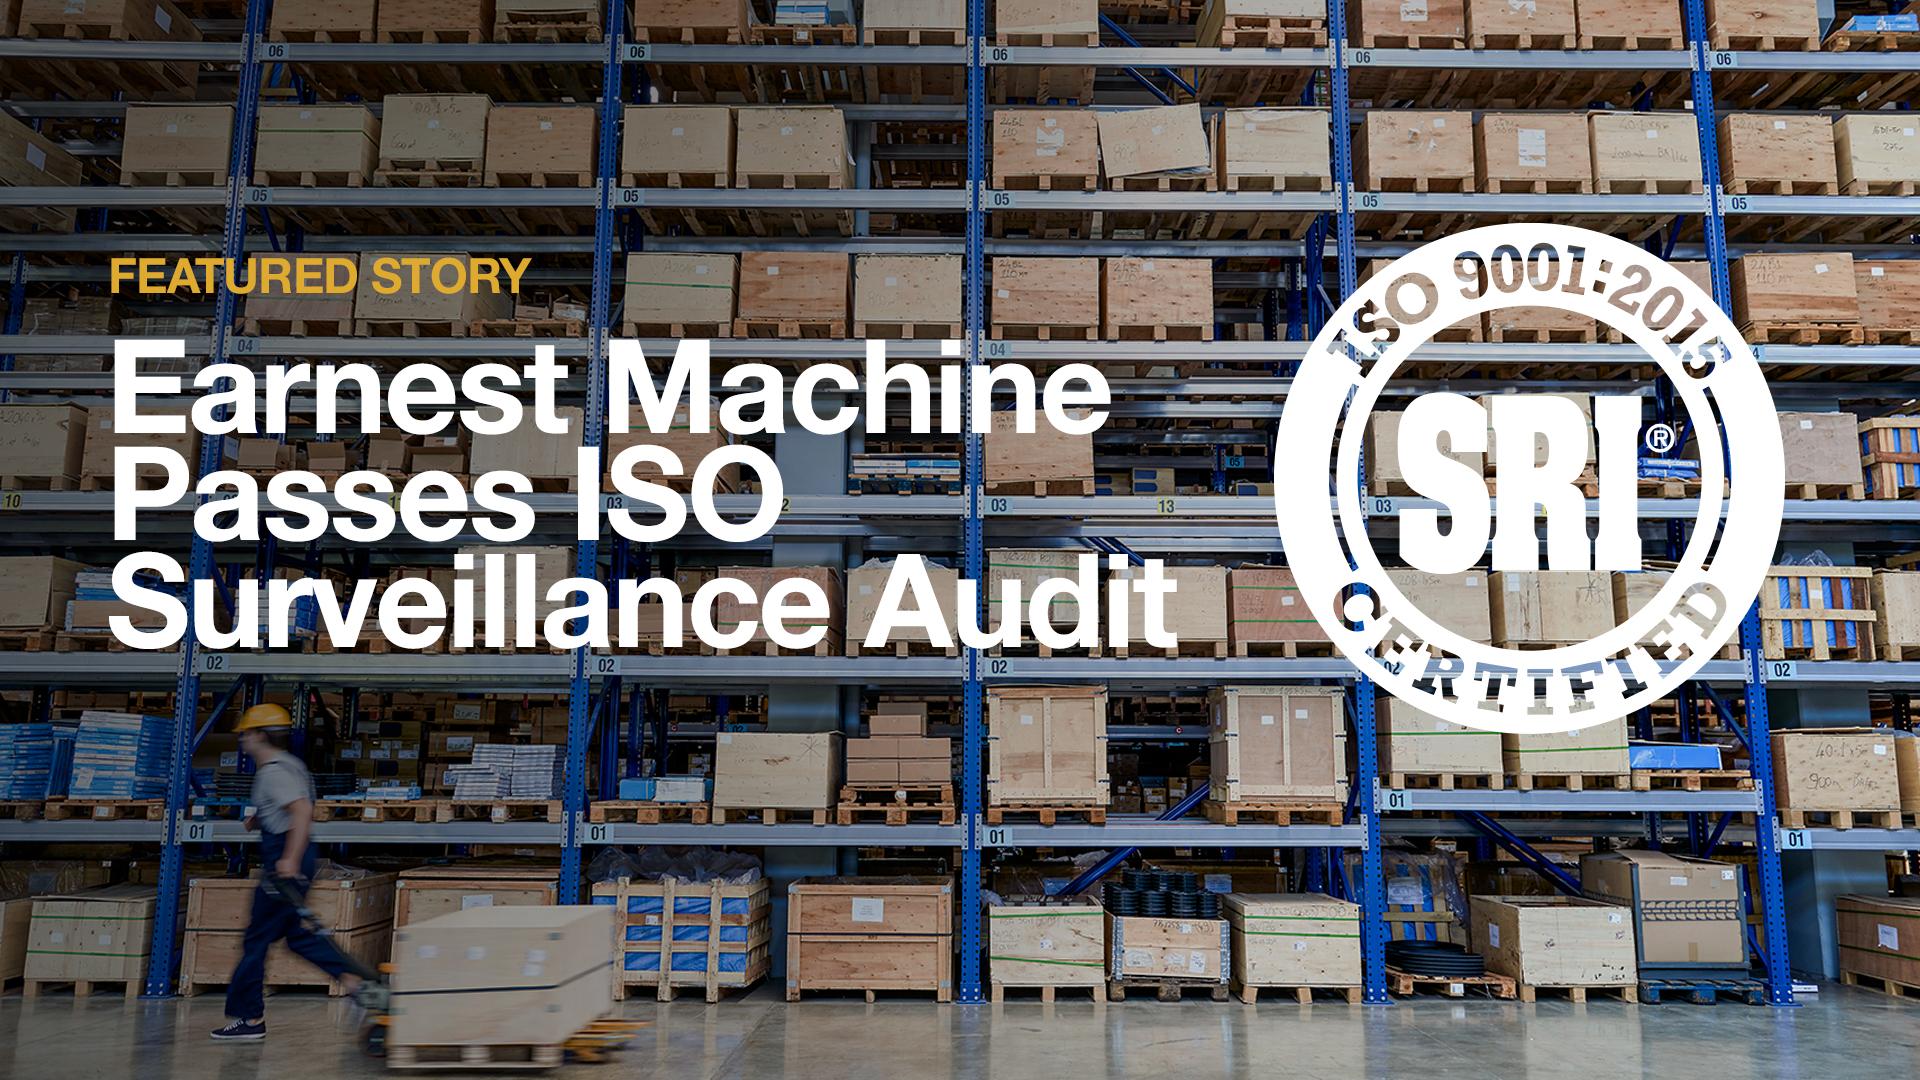 Earnest Machine Passes ISO Surveillance Audit